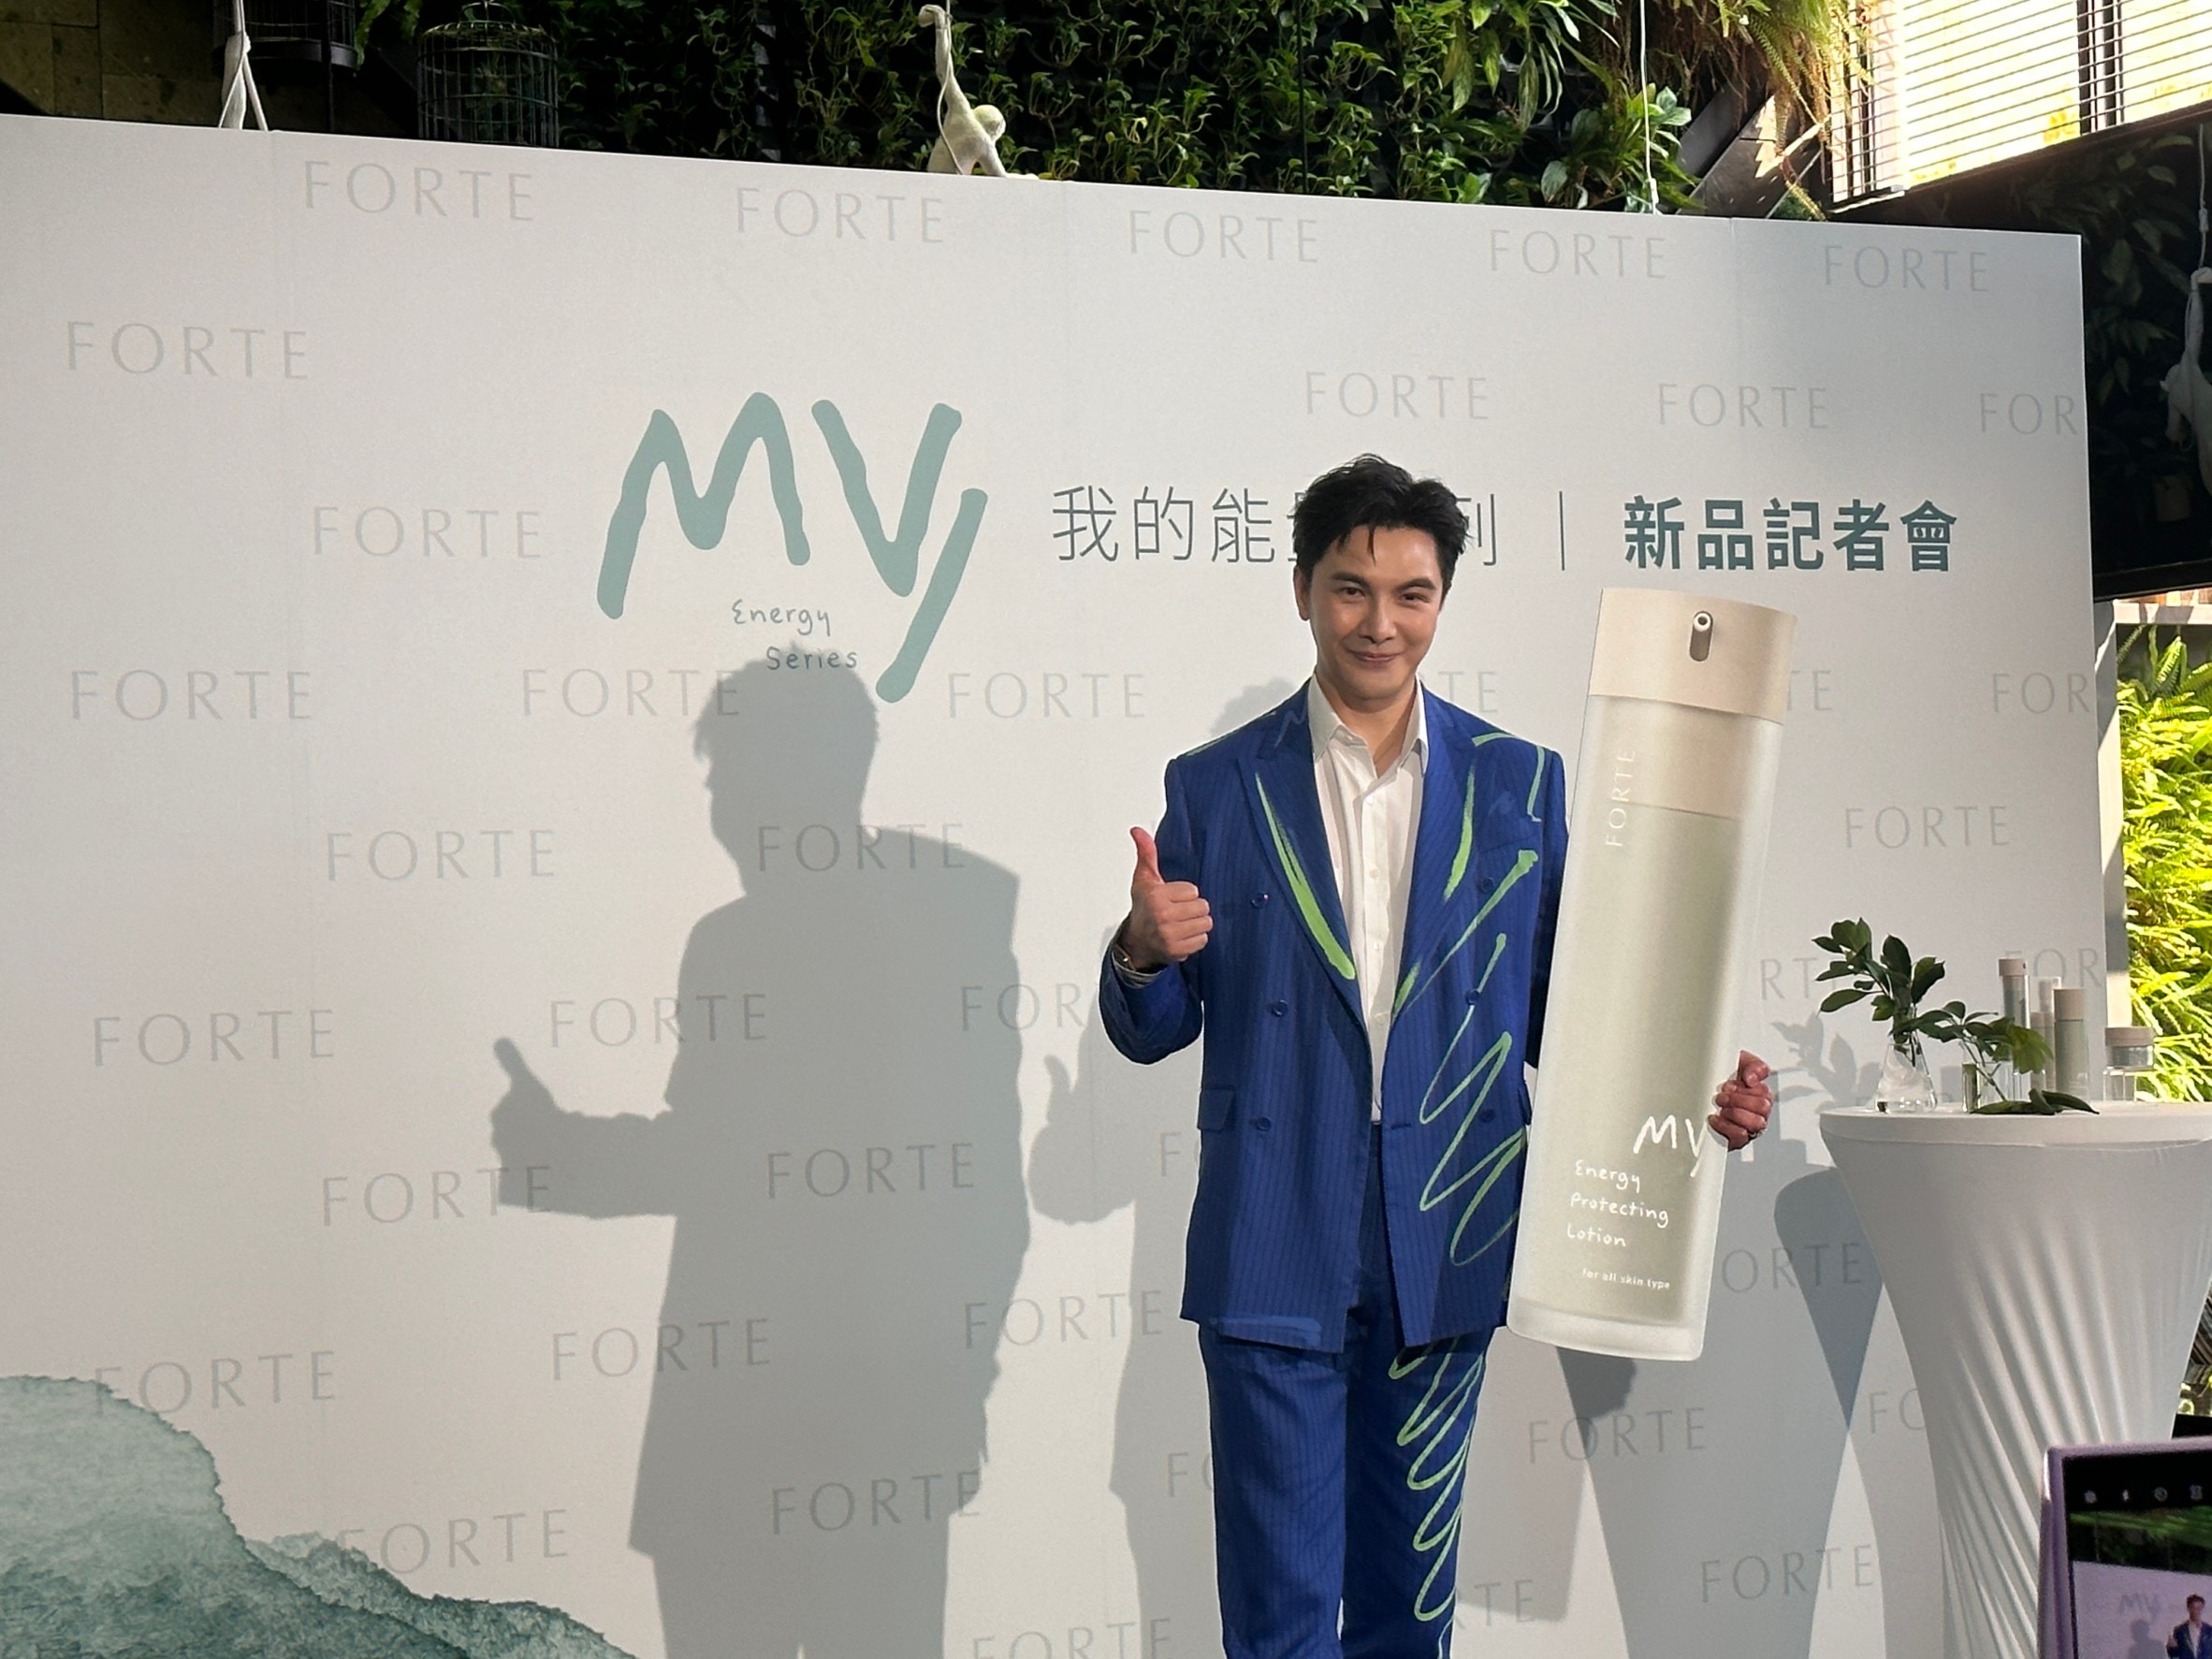 「戲劇男神」謝佳見連續2年擔任《FORTE》品牌大使。